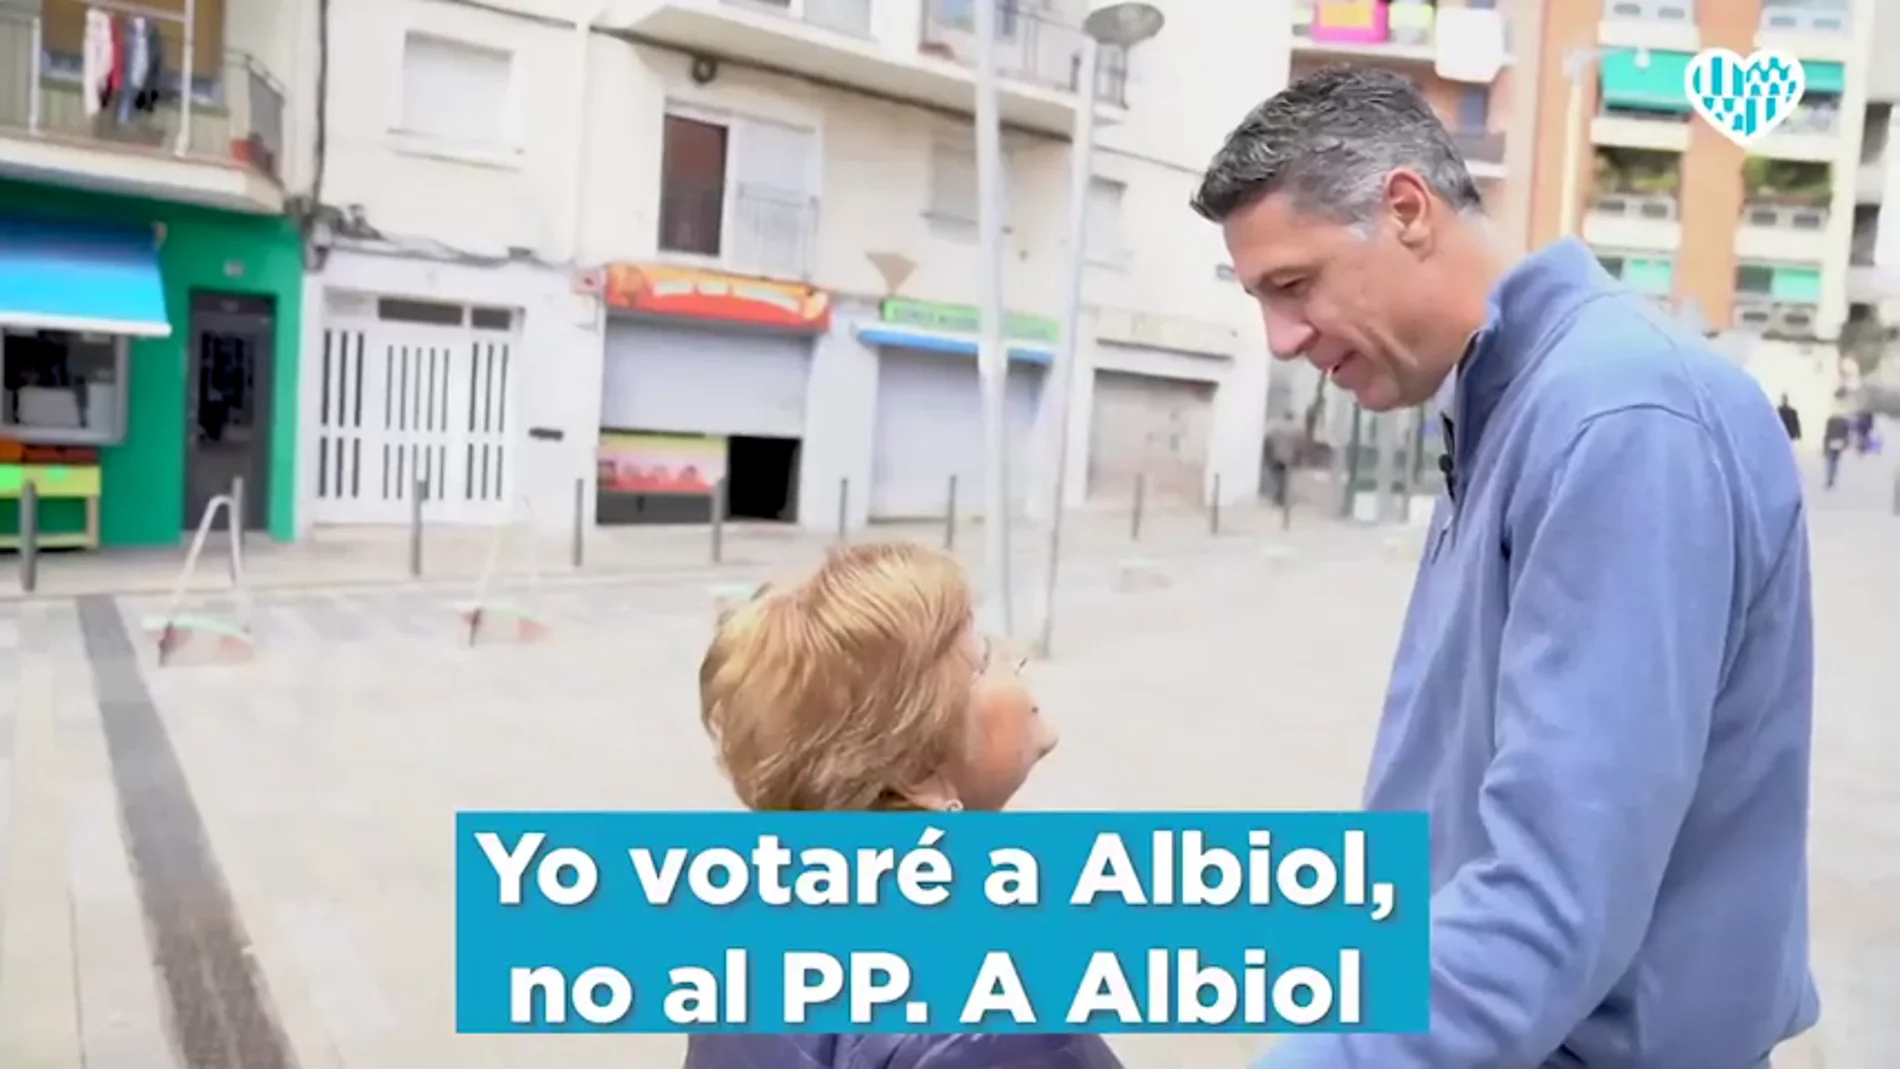 Albiol lanza un vídeo pidiendo el voto a su "persona" y "no al PP" el 26M tras los resultados de las generales